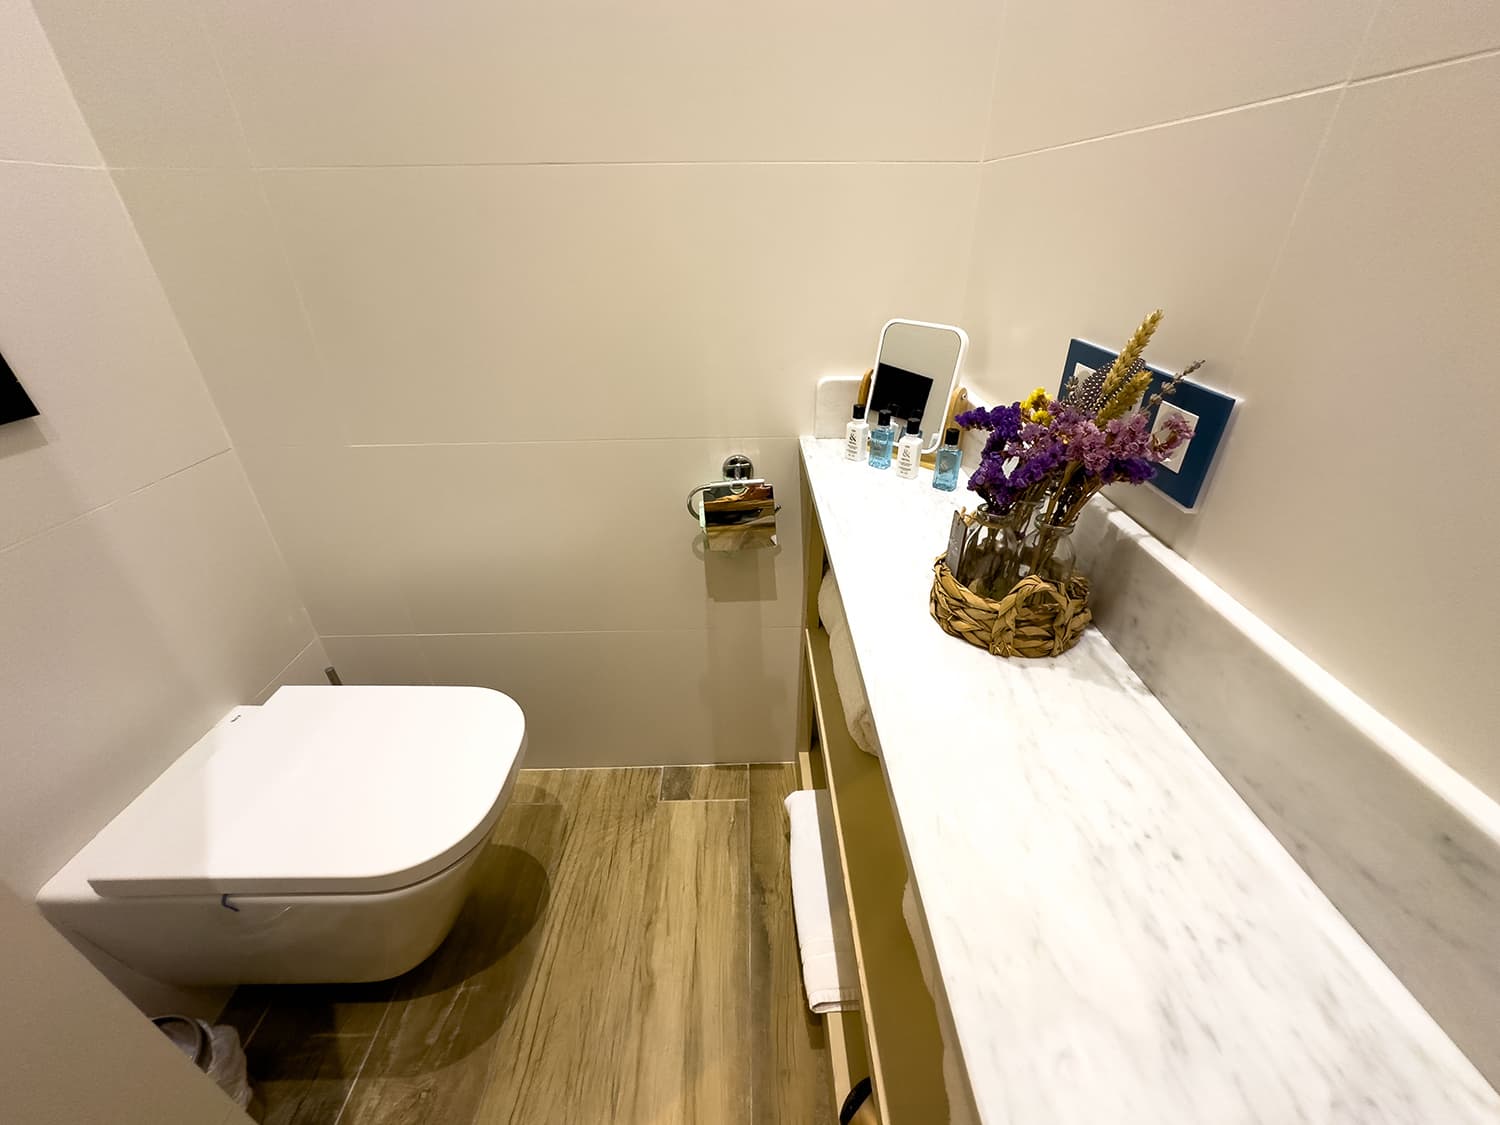 Bathroom | Holiday apartment, Pézenas, Occitanie